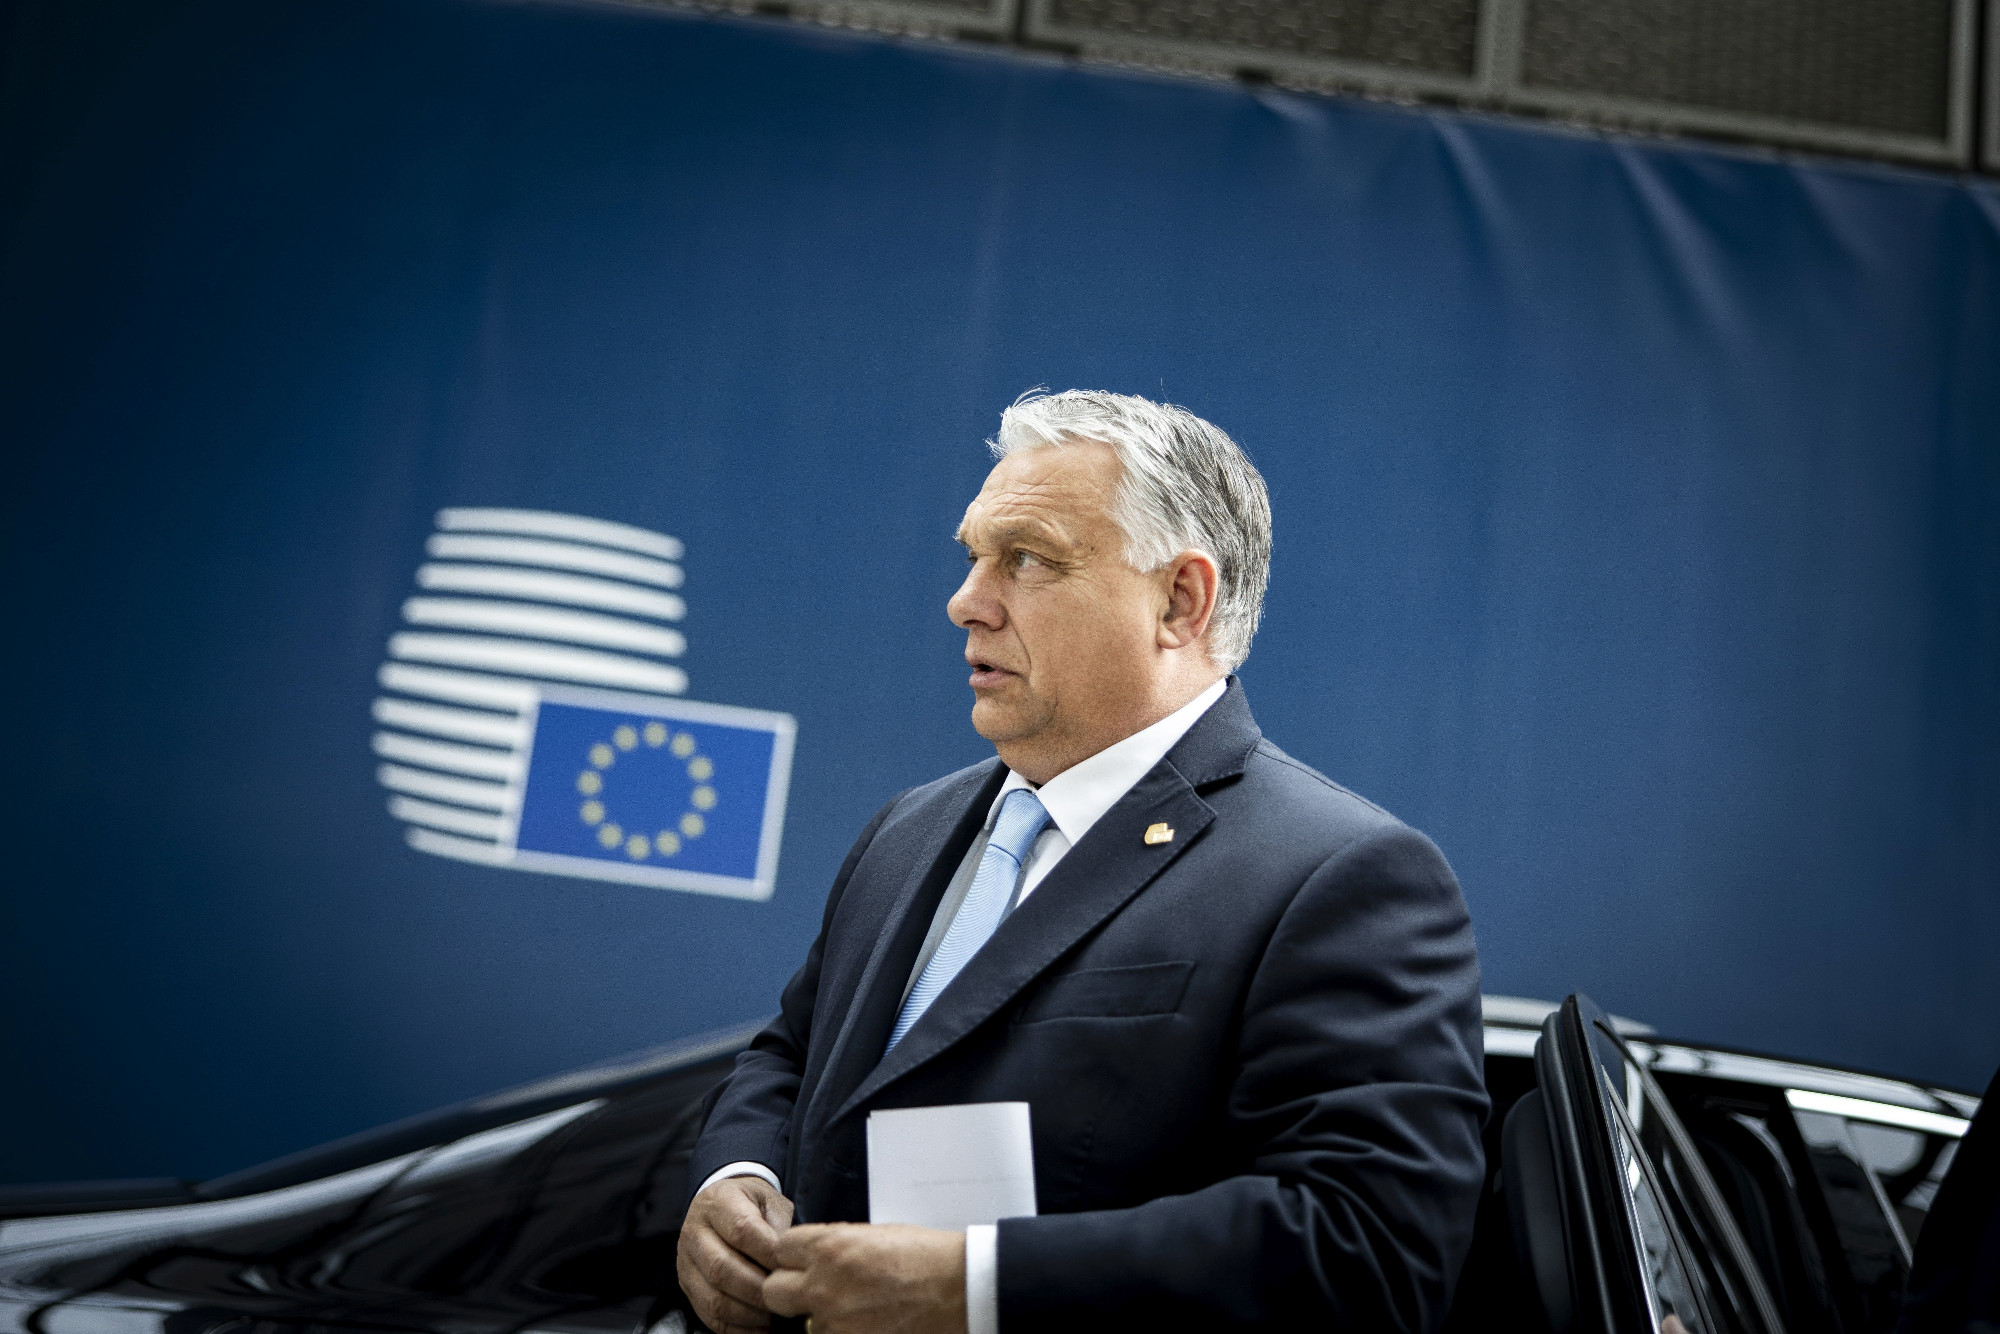 Változtathatnak az uniós döntéshozatalon, miután az Orbán-kormány a vétózást fegyverként kezeli